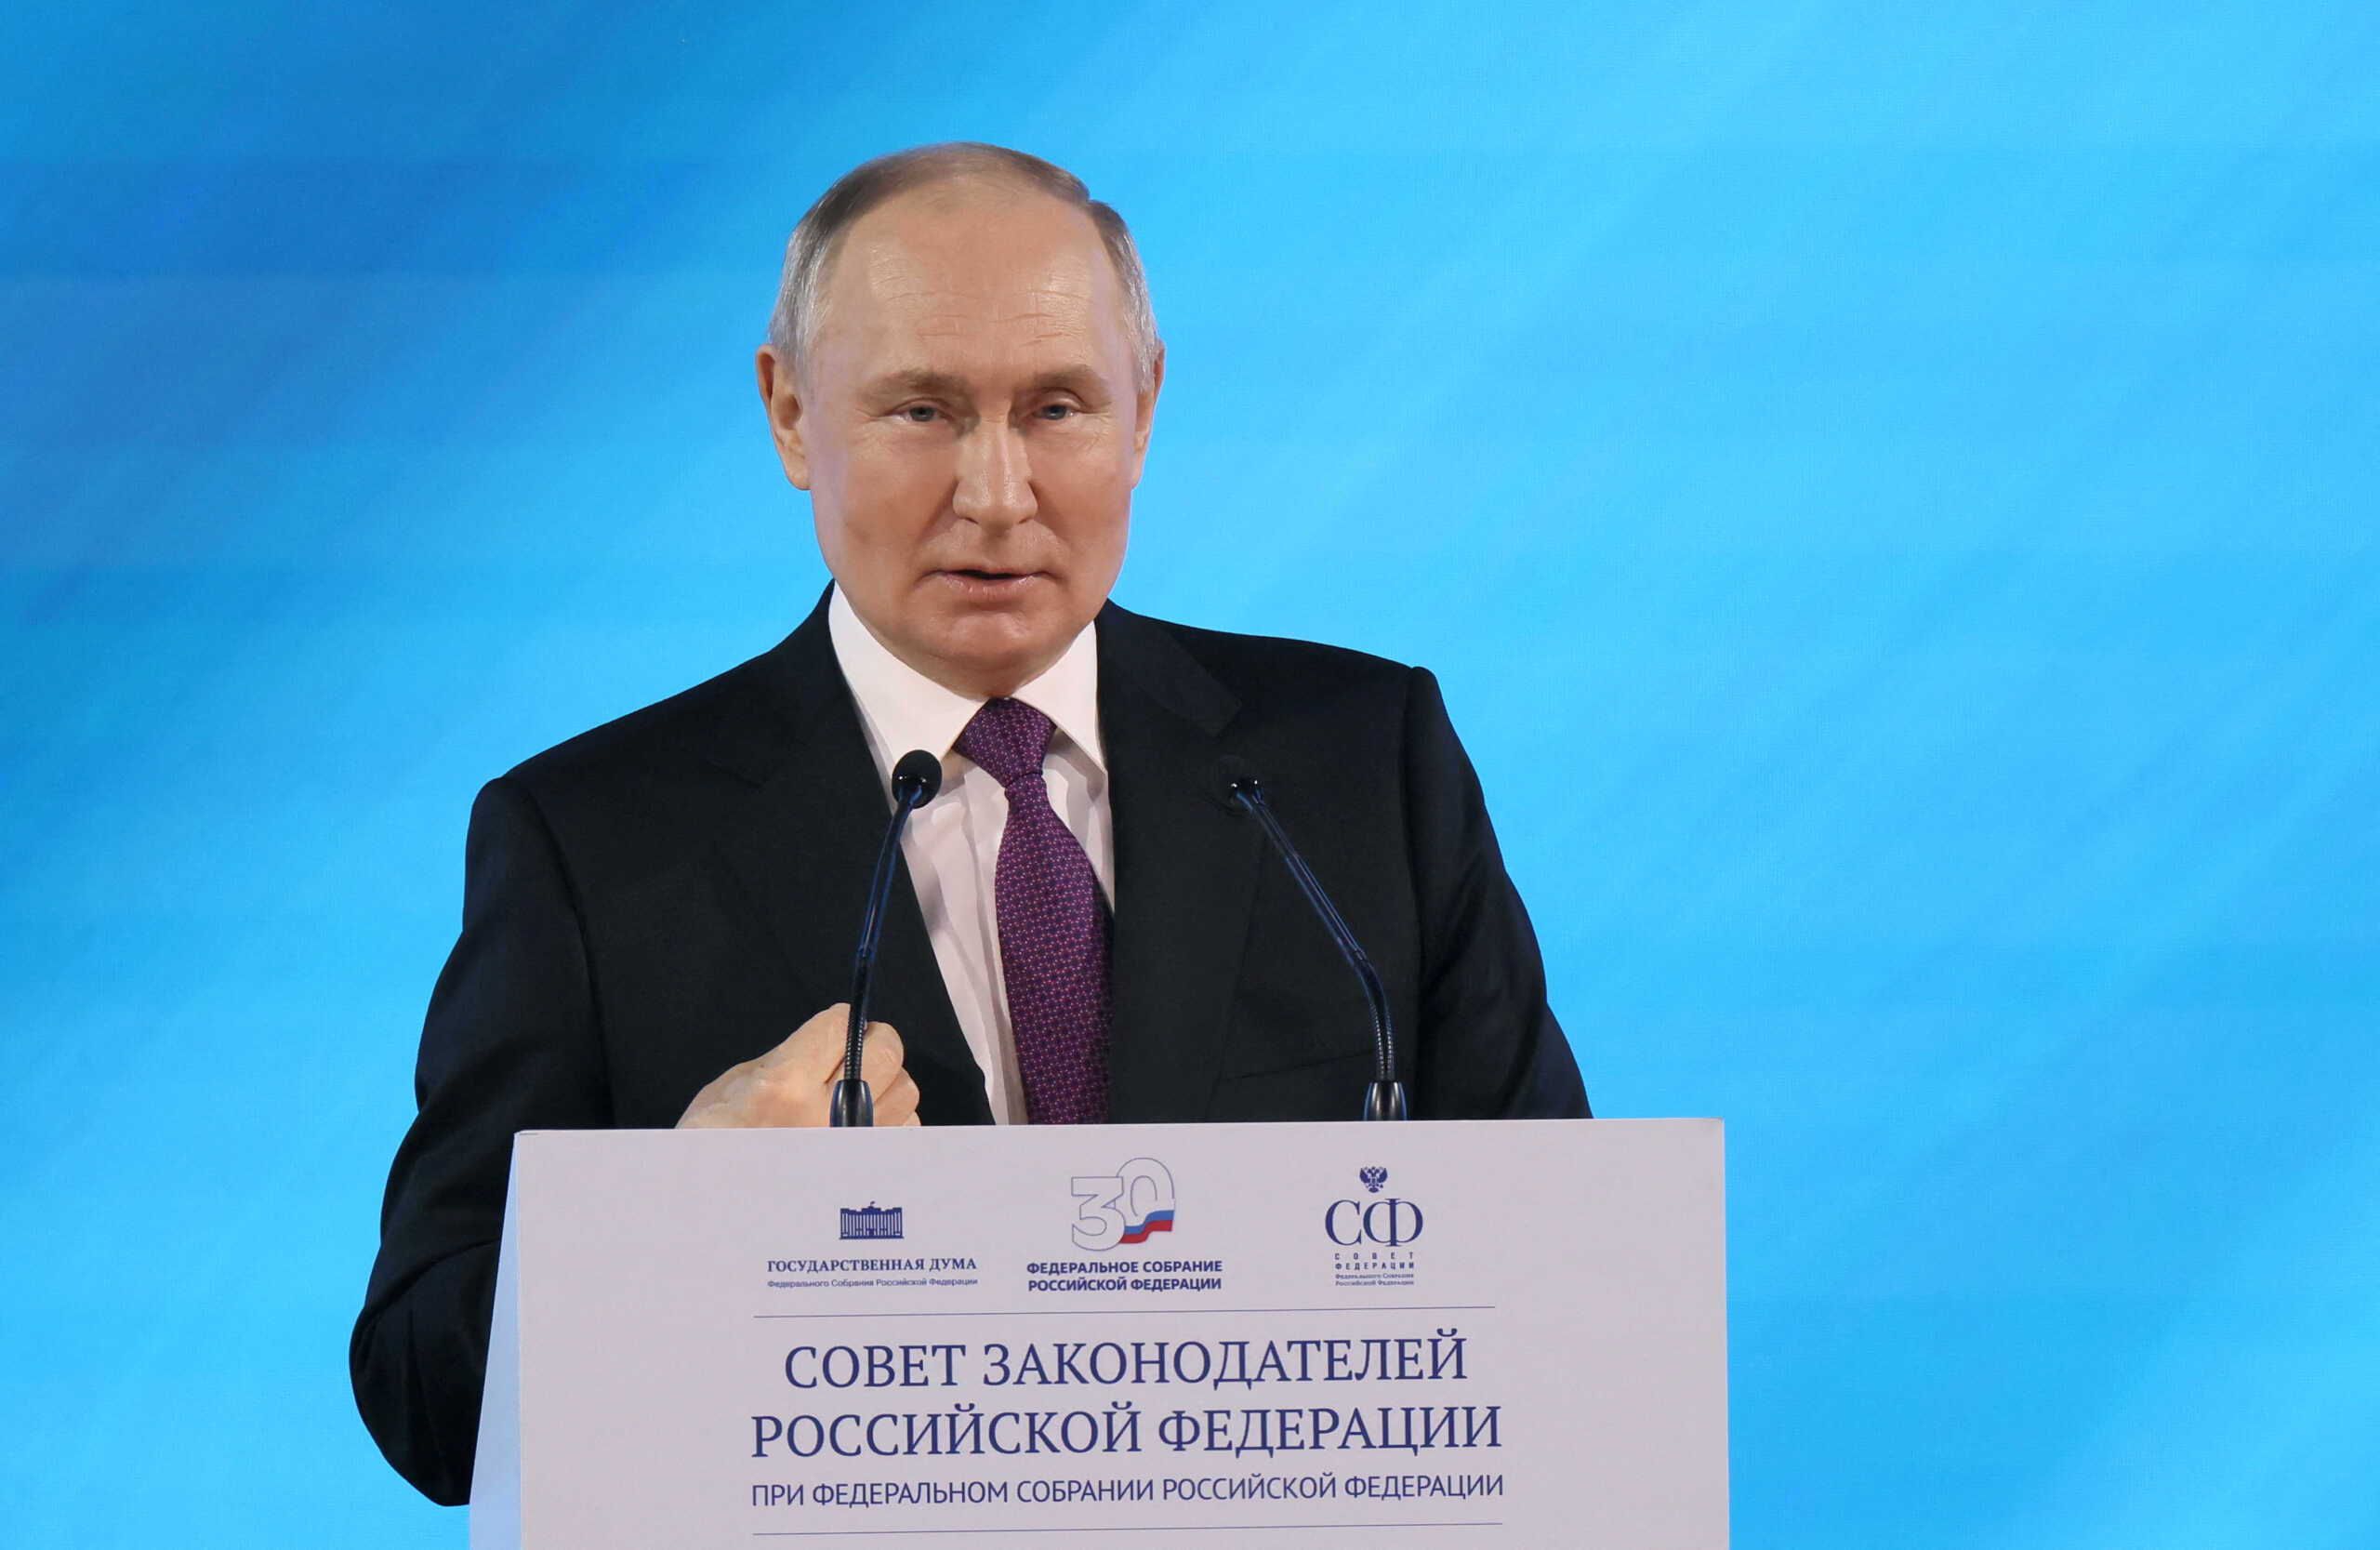 Εκλογές στη Ρωσία: Αν και ο Πούτιν είναι το φαβορί, έχουν κατατεθεί 16 υποψηφιότητες